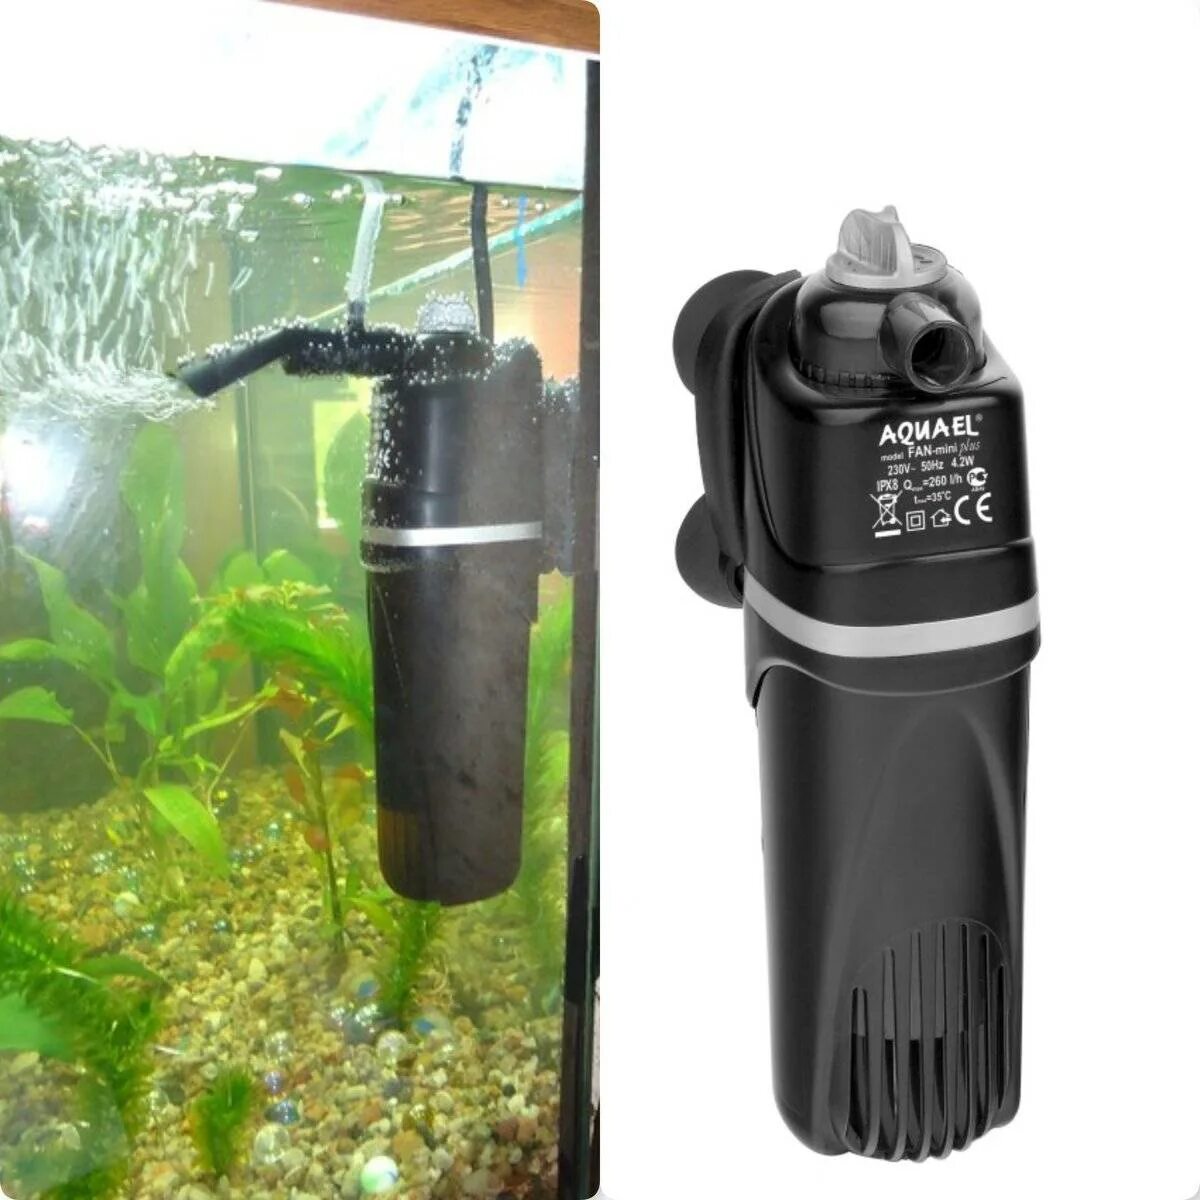 Фильтр для воды рыбкам. Внешний фильтр Aquael для аквариума на 200 литров. Компрессор аквариумный акваэль. Фильтр аквариумный внешний dophh 700. Aquael Fan Mini Plus.